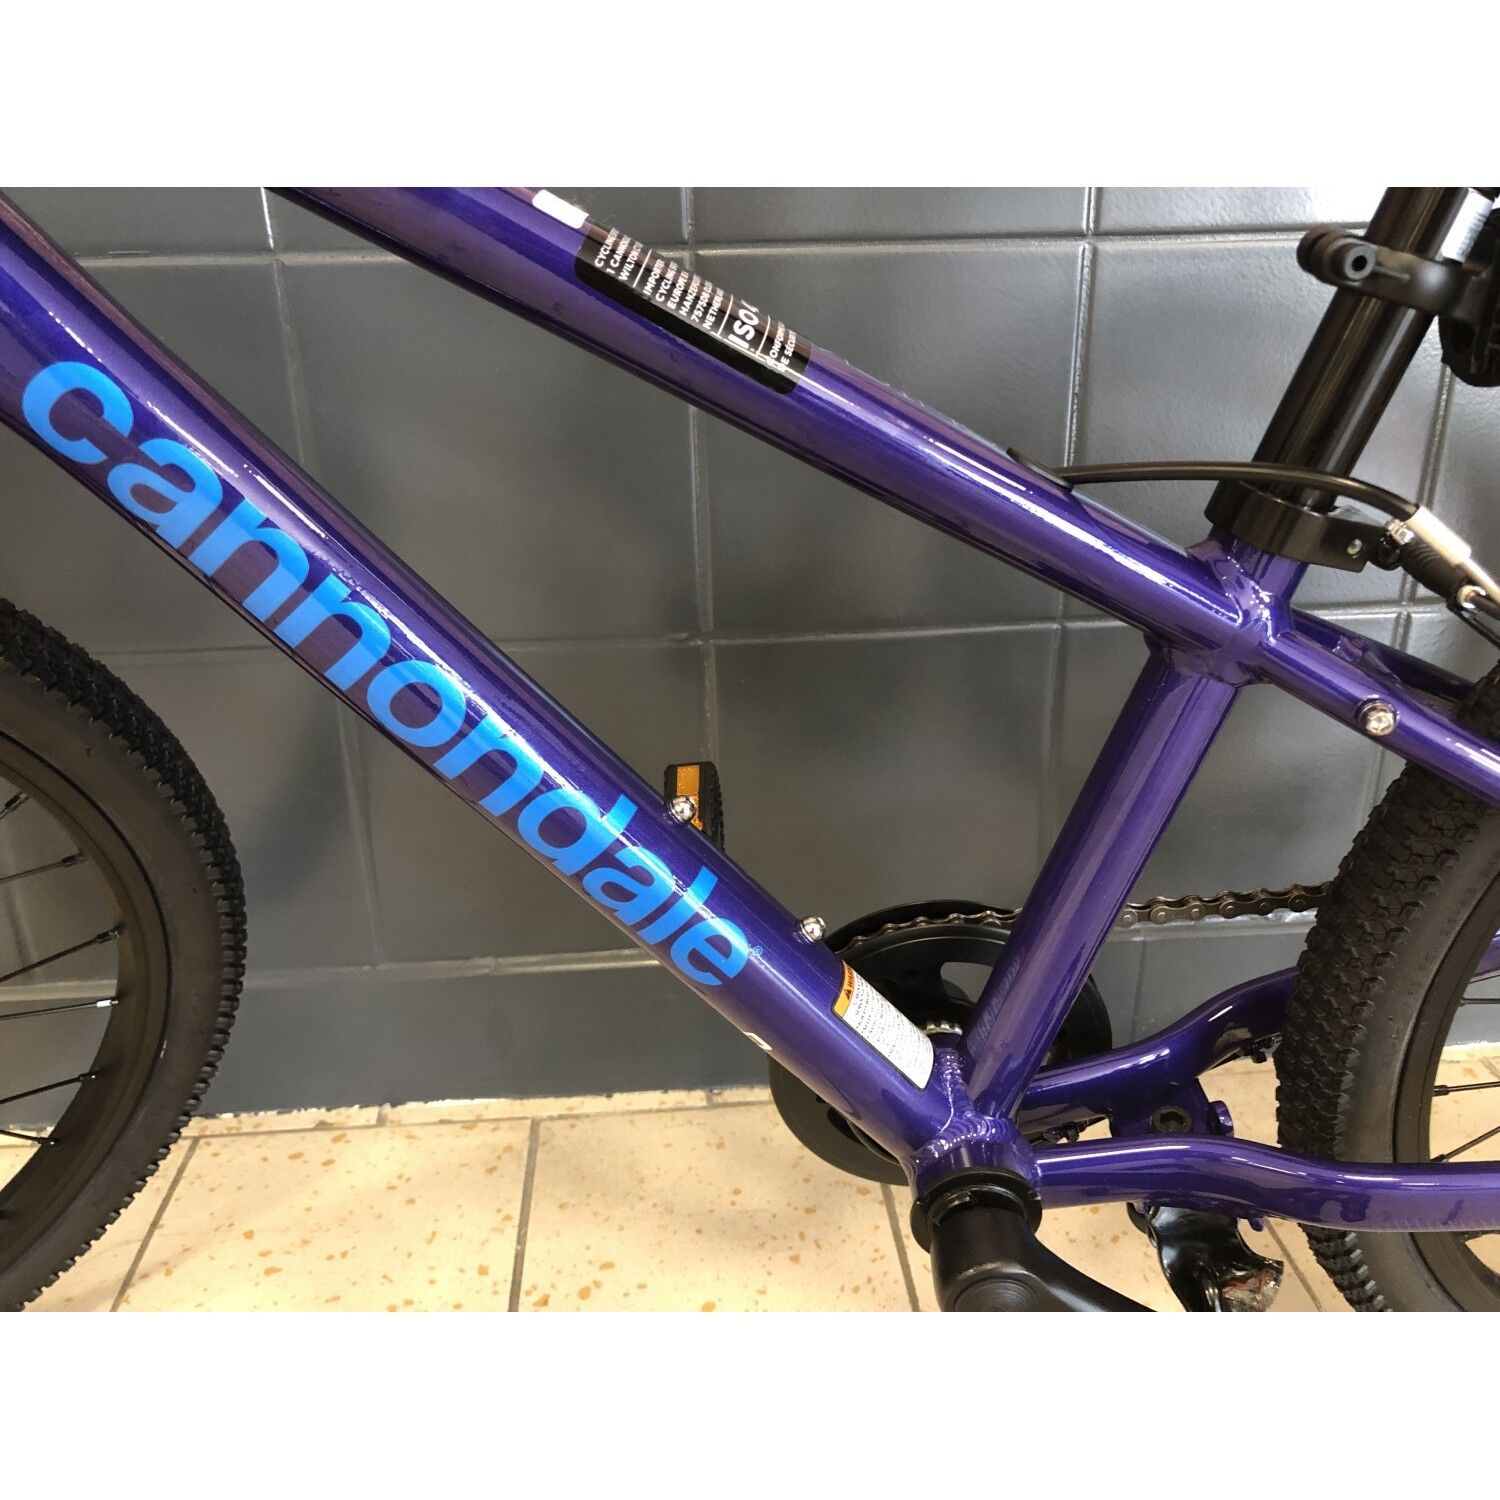 VTT Enfant Cannondale Trail Kids 16 Bleu - Absolubike, vélos et accessoires